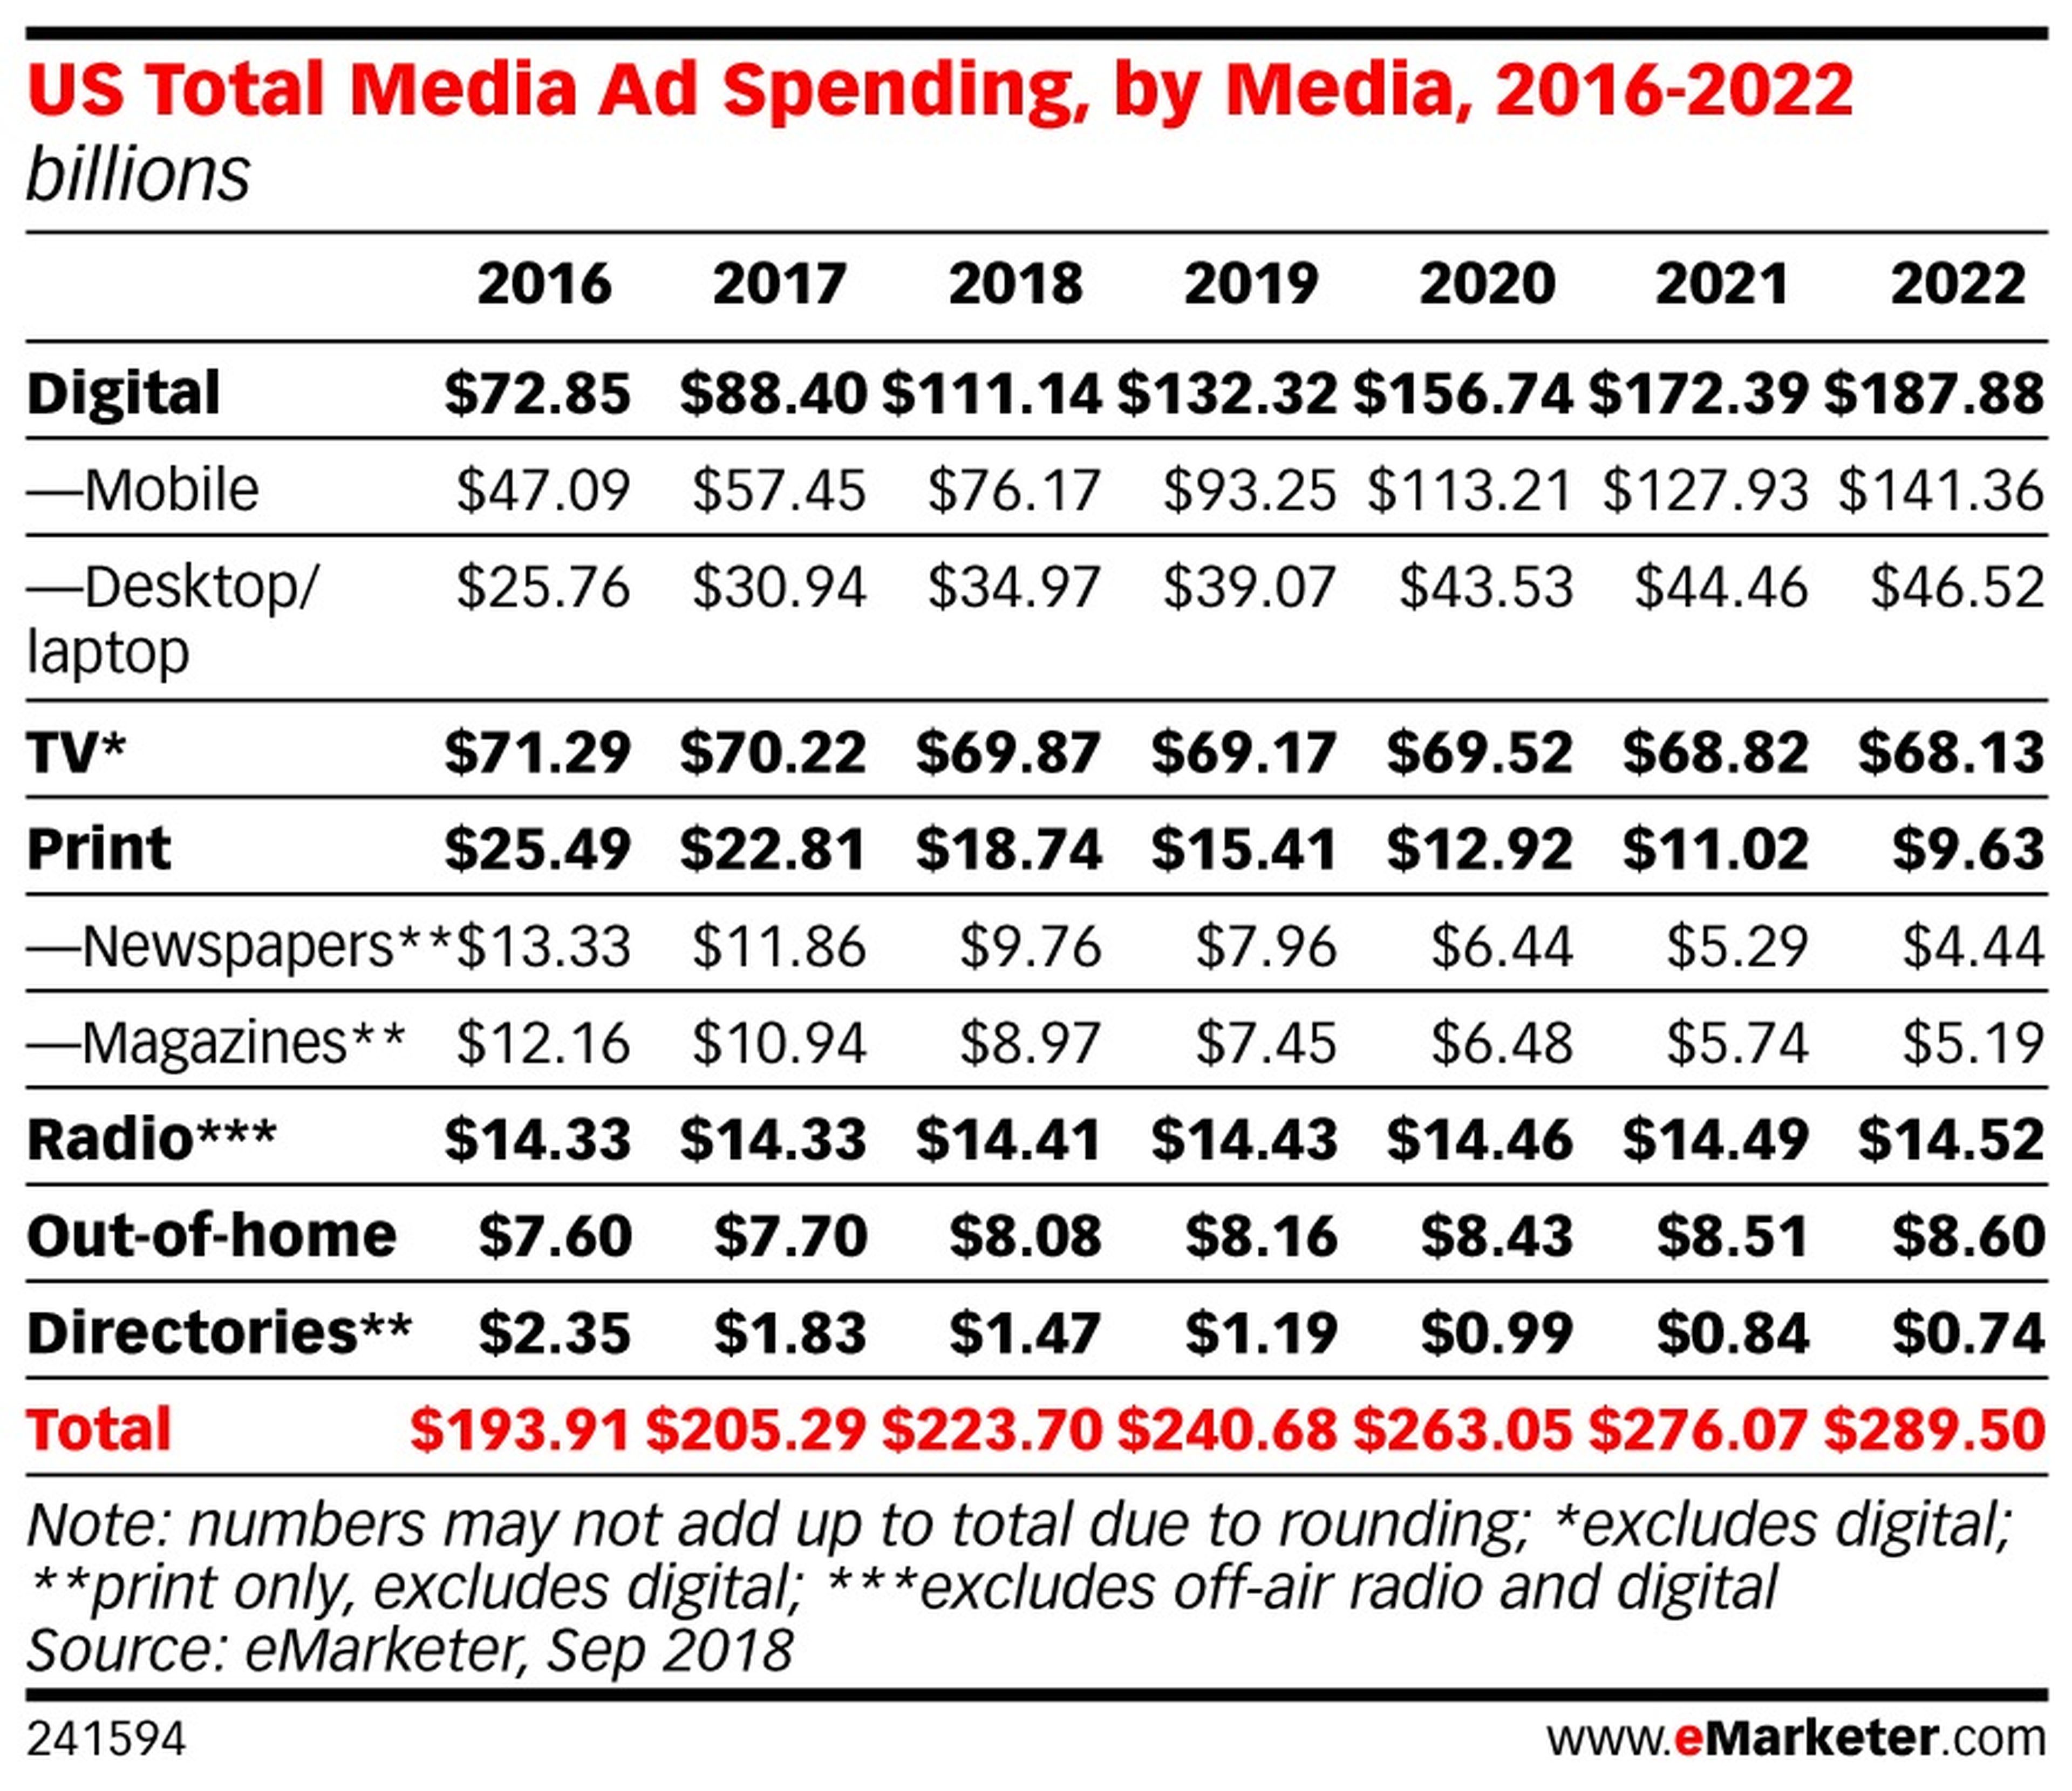 Inversión publicitaria en medios en Estados Unidos, de 2016 a 2022.